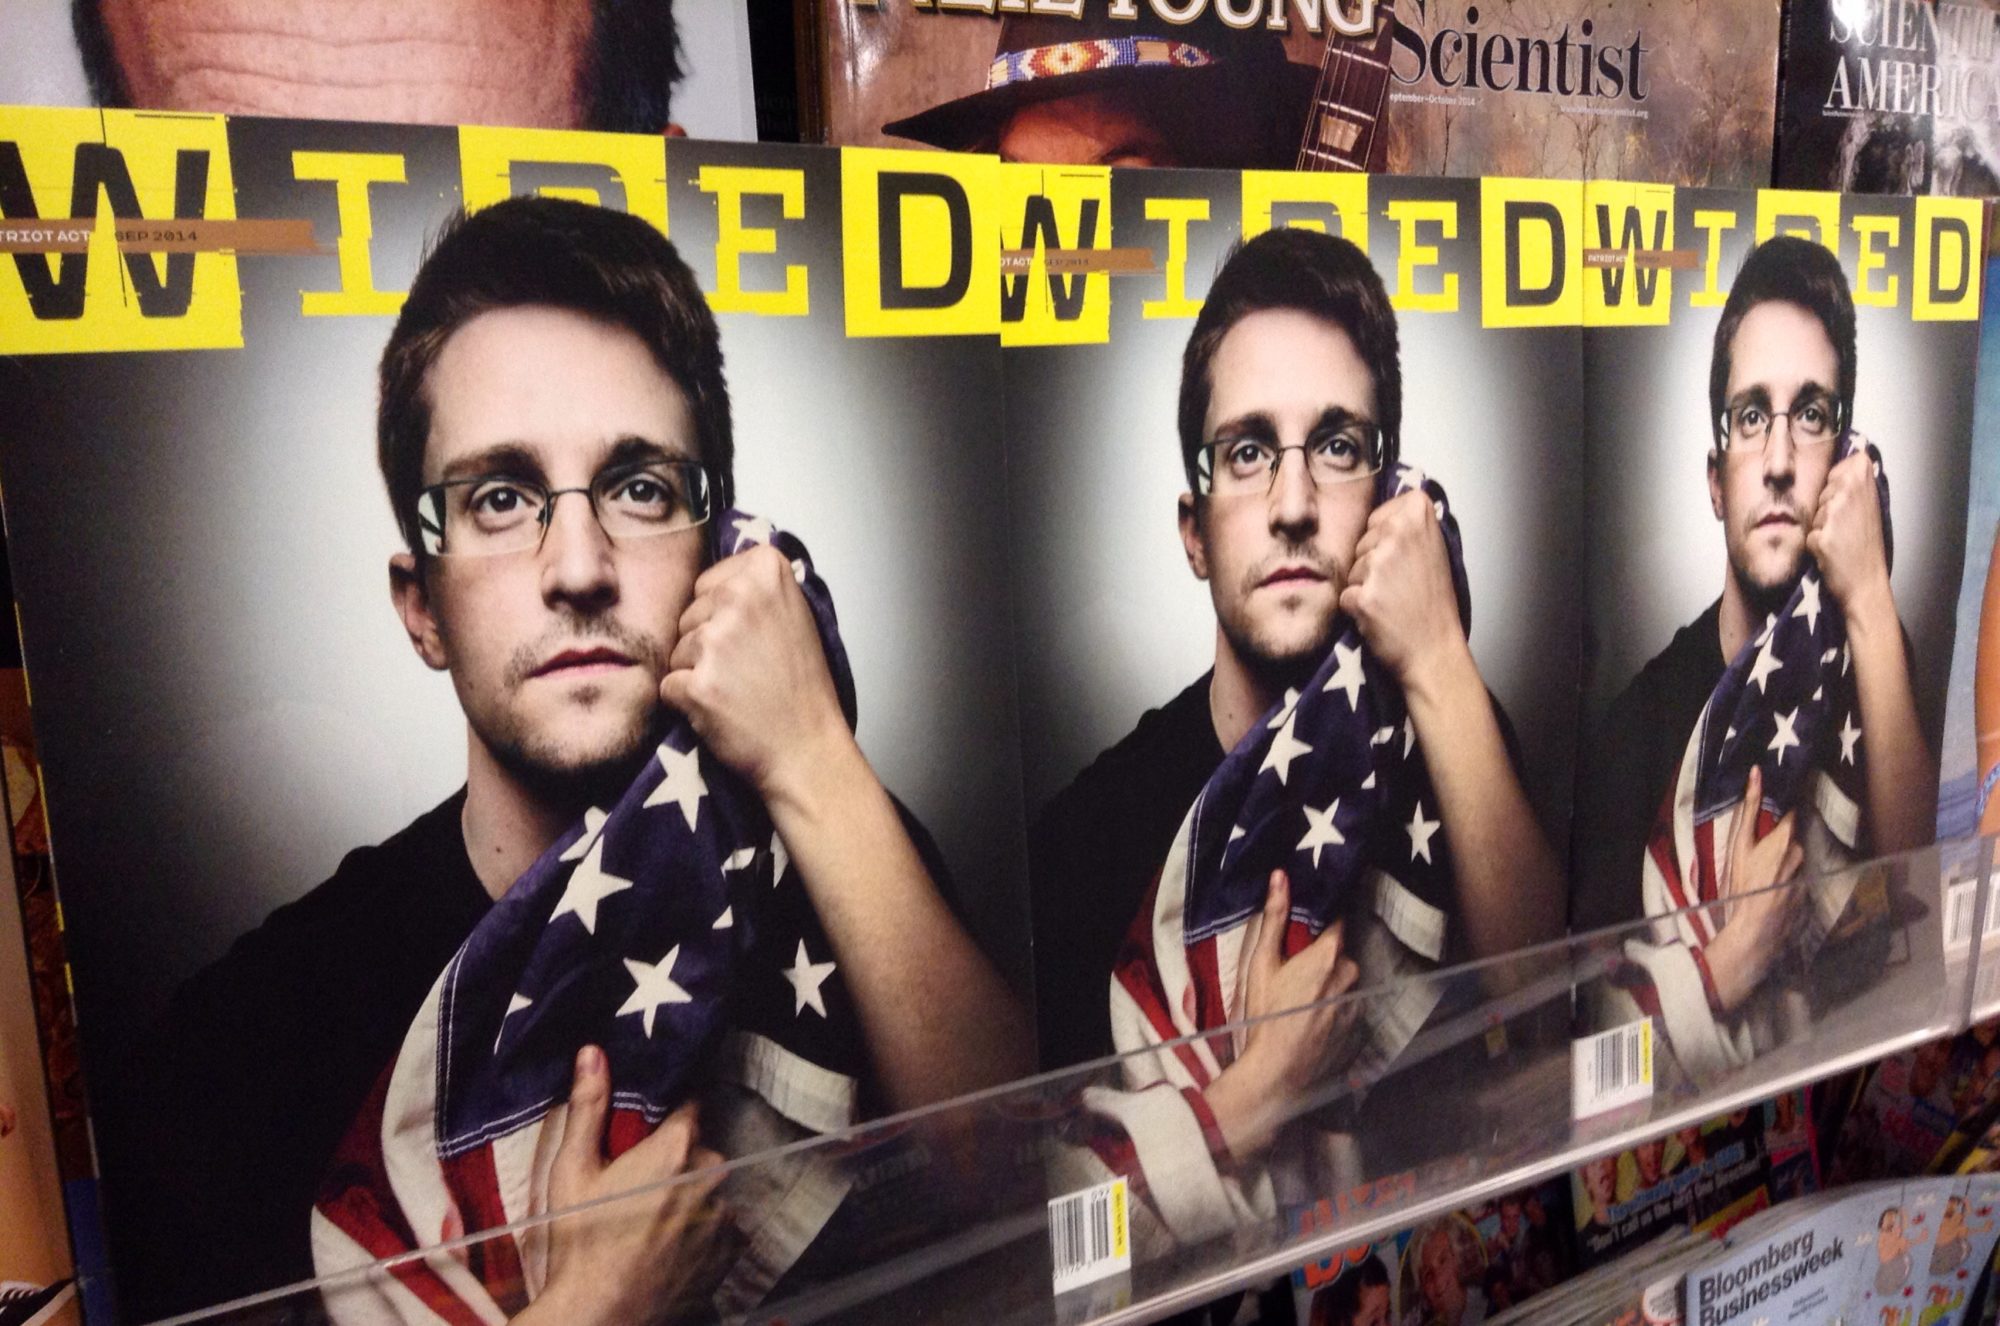 Edward Snowden: What Shall We Make of “Snowdenism”?